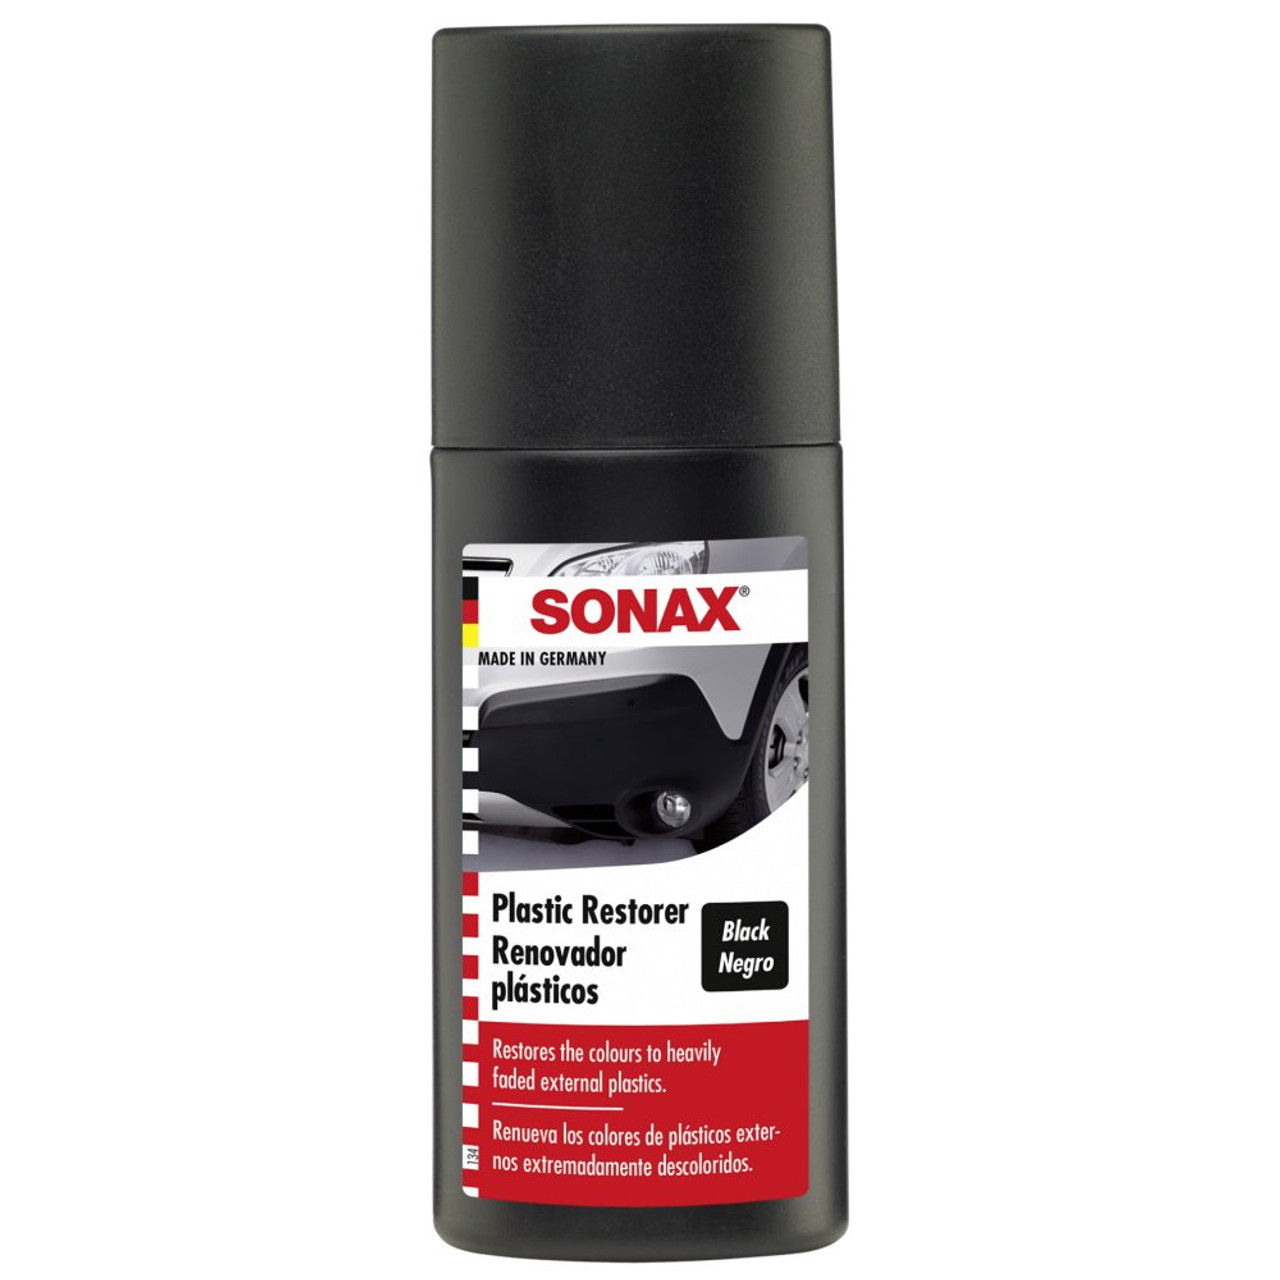 SONAX Plastic restorer black 100ml